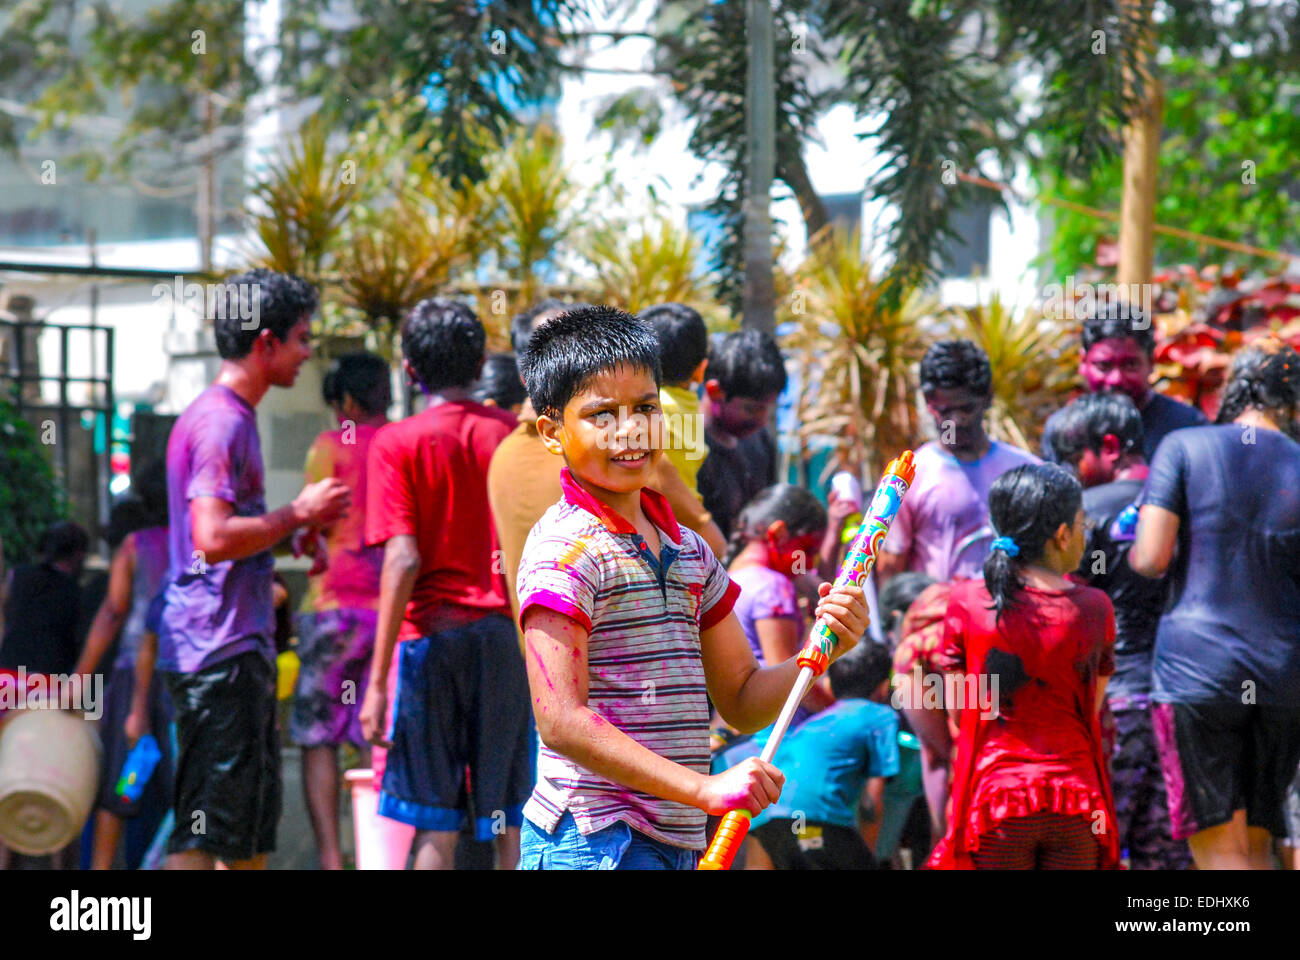 Gruppe von Menschen spielen mit Pulver Farben & Wasser während das hinduistische Frühlingsfest Holi auch bekannt als ein Fest der Farben. Stockfoto